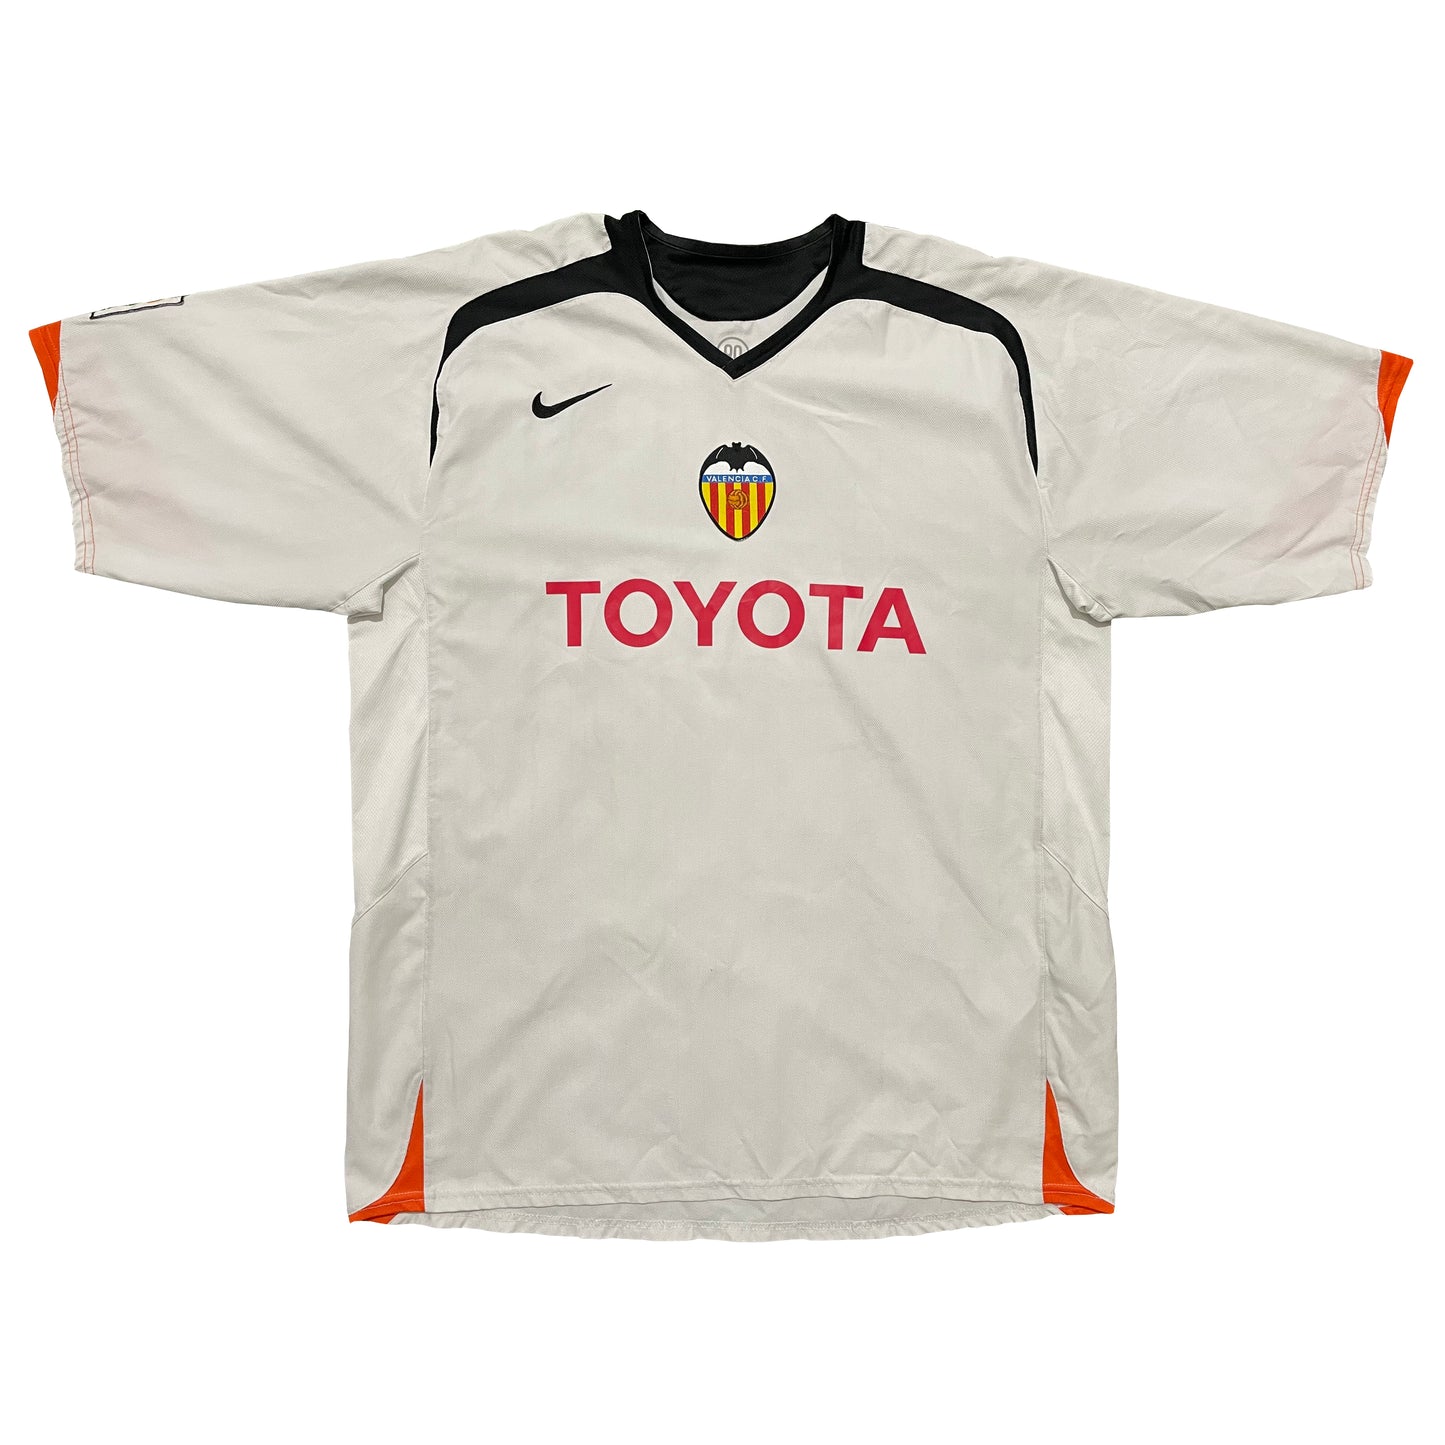 <tc>2005-2006 Valencia CF camiseta local #21 Aimar (XL)</tc>